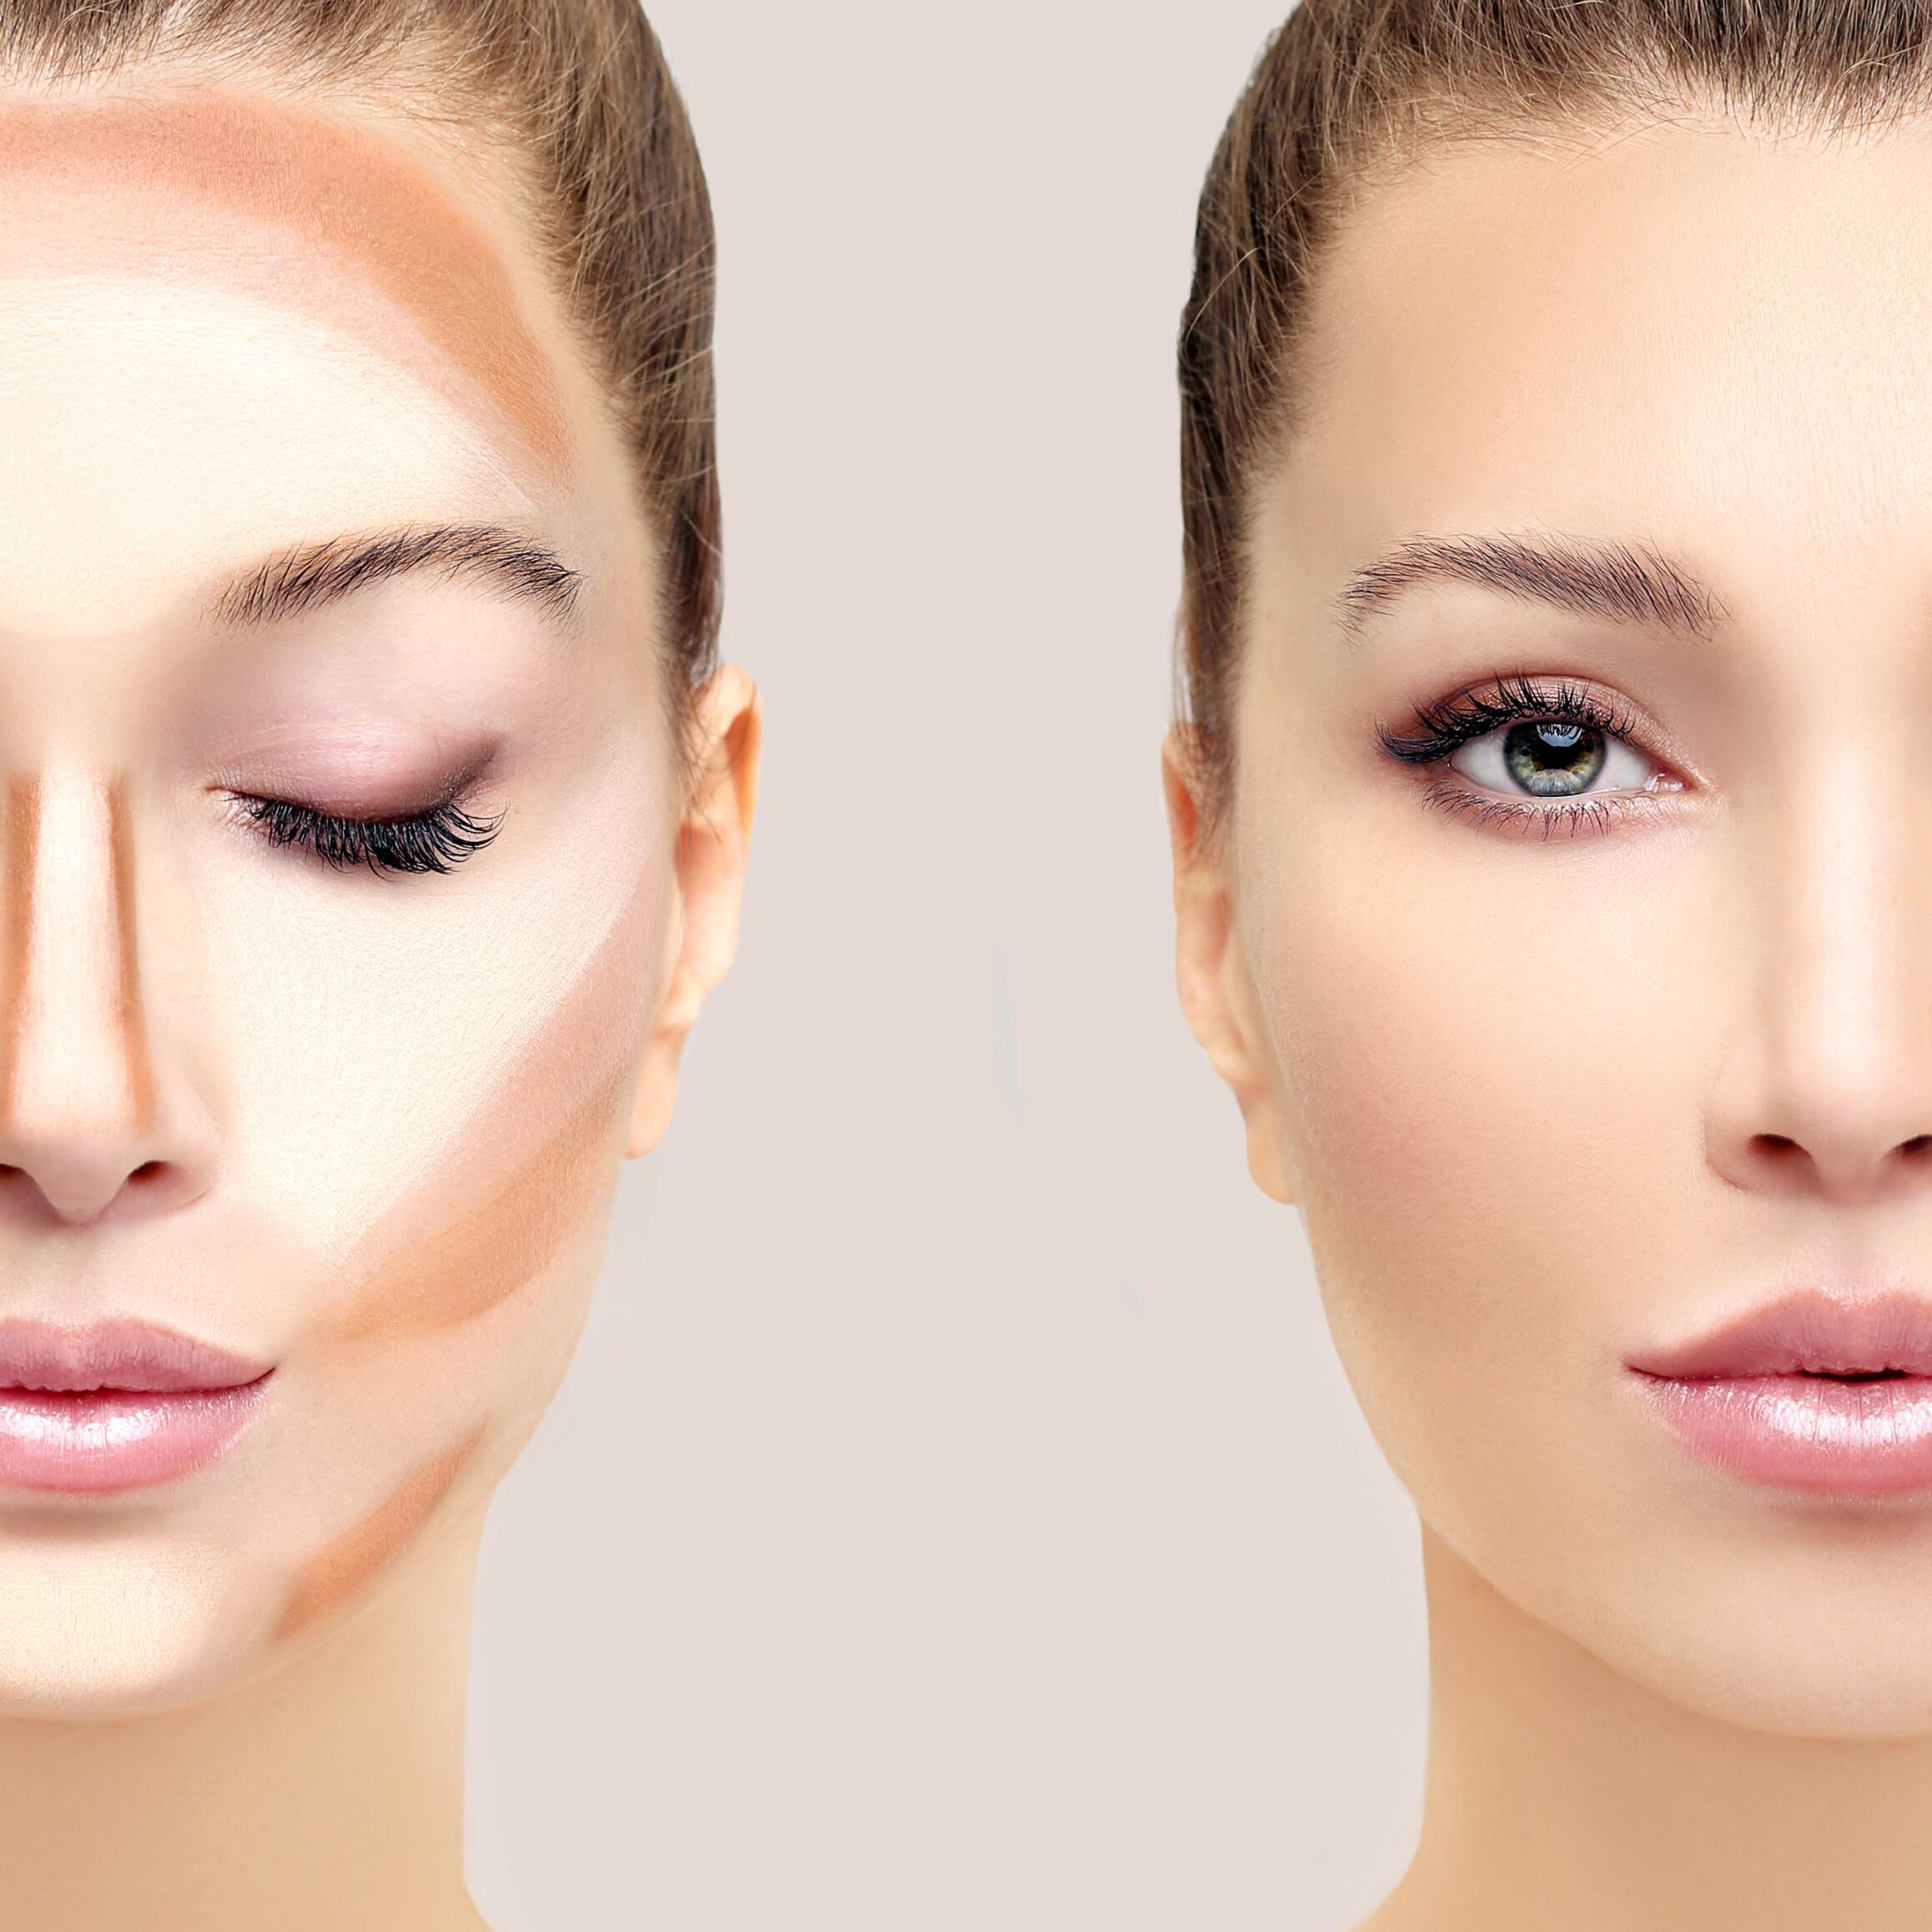 Maquillage contouring 101 : réussir la technique en 6 étapes faciles